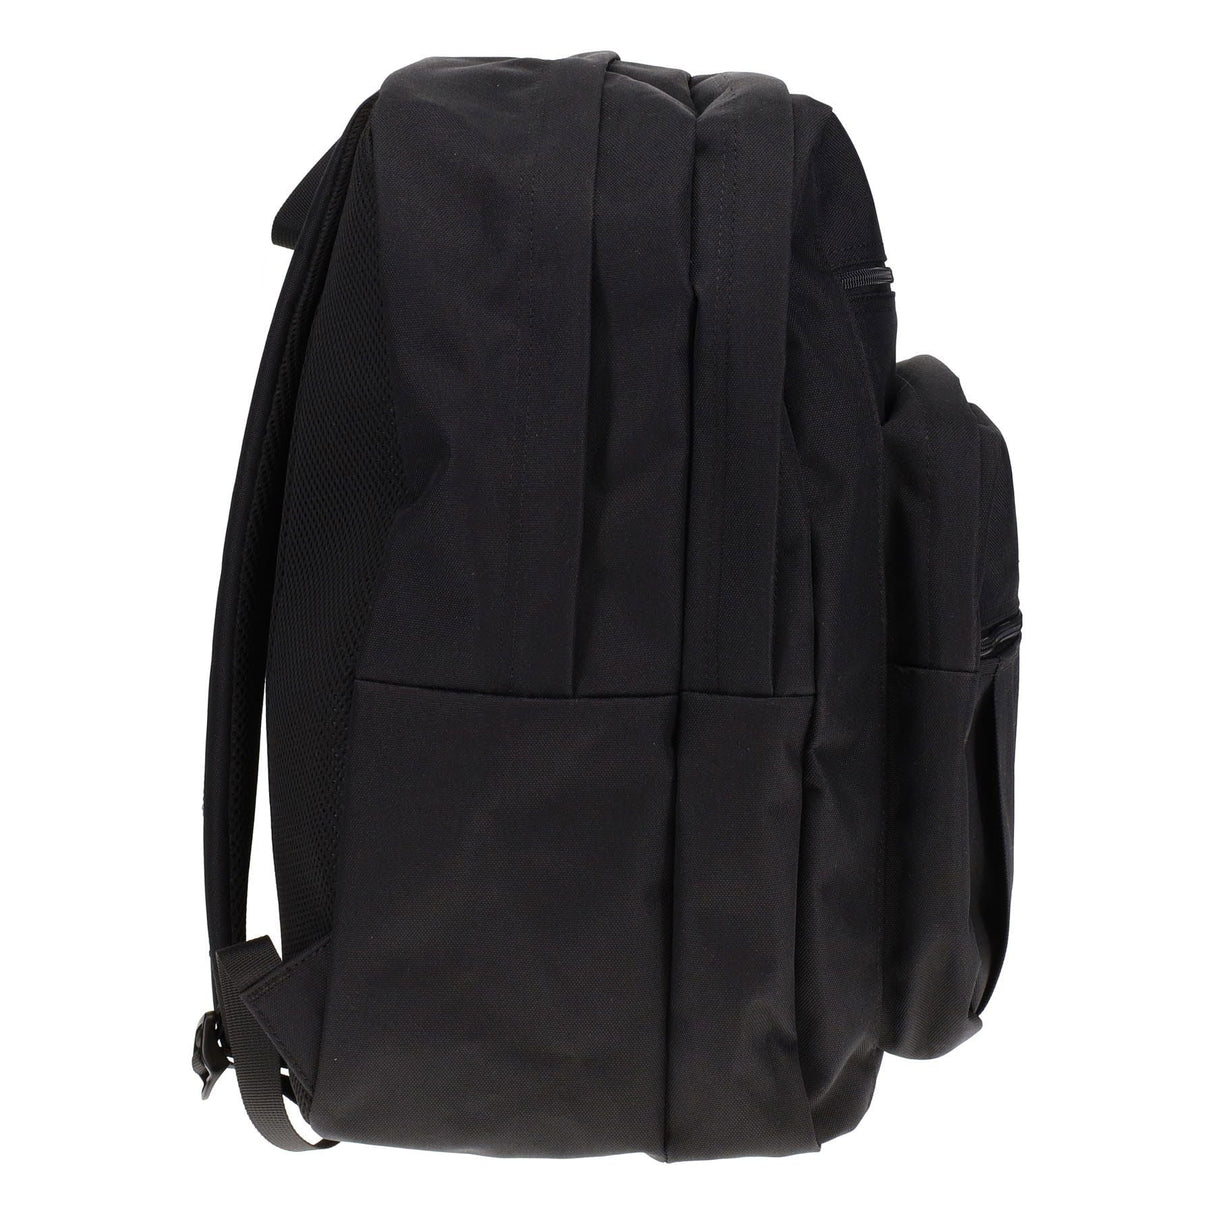 Premto 34L Backpack - Jet Black-Backpacks-Premto|StationeryShop.co.uk